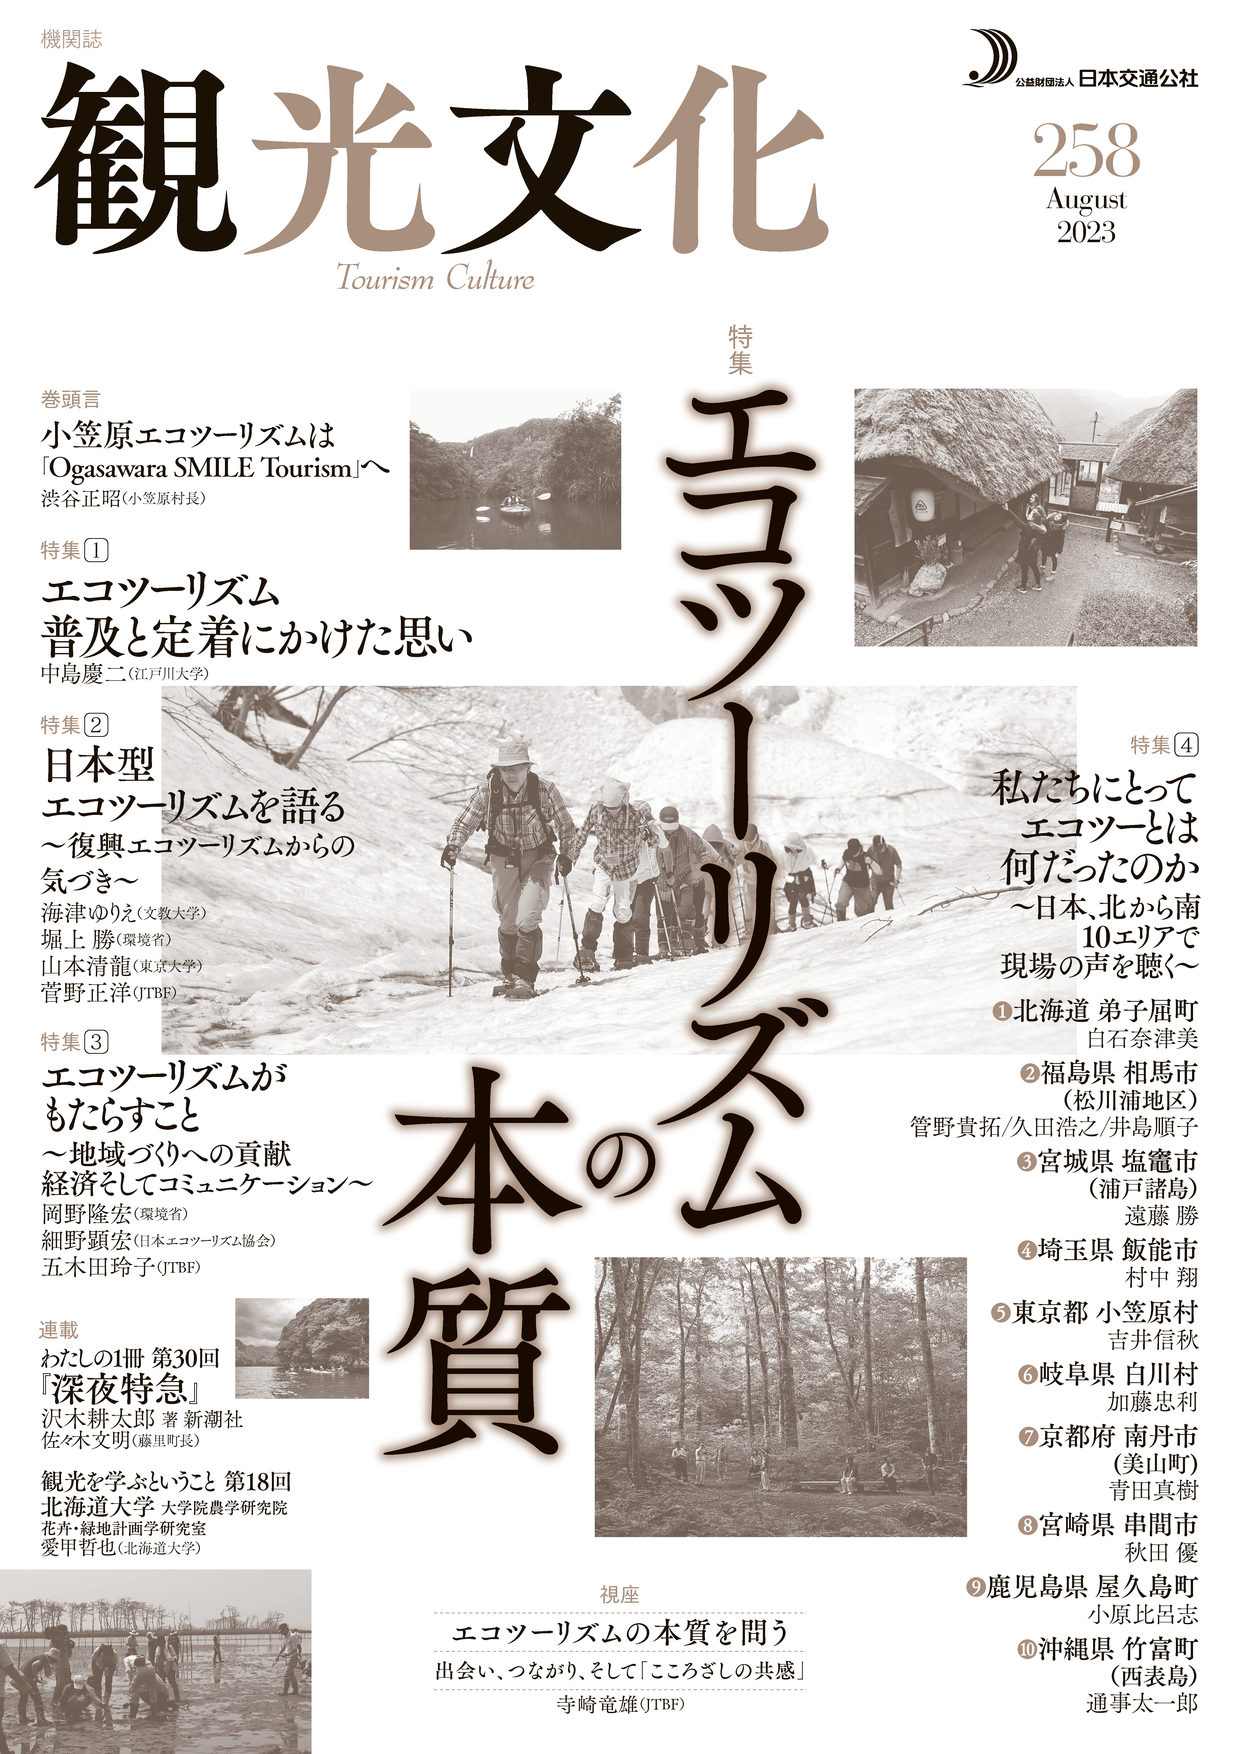 エコツーリズムの本質（観光文化258号） | 出版 | (公財)日本交通公社